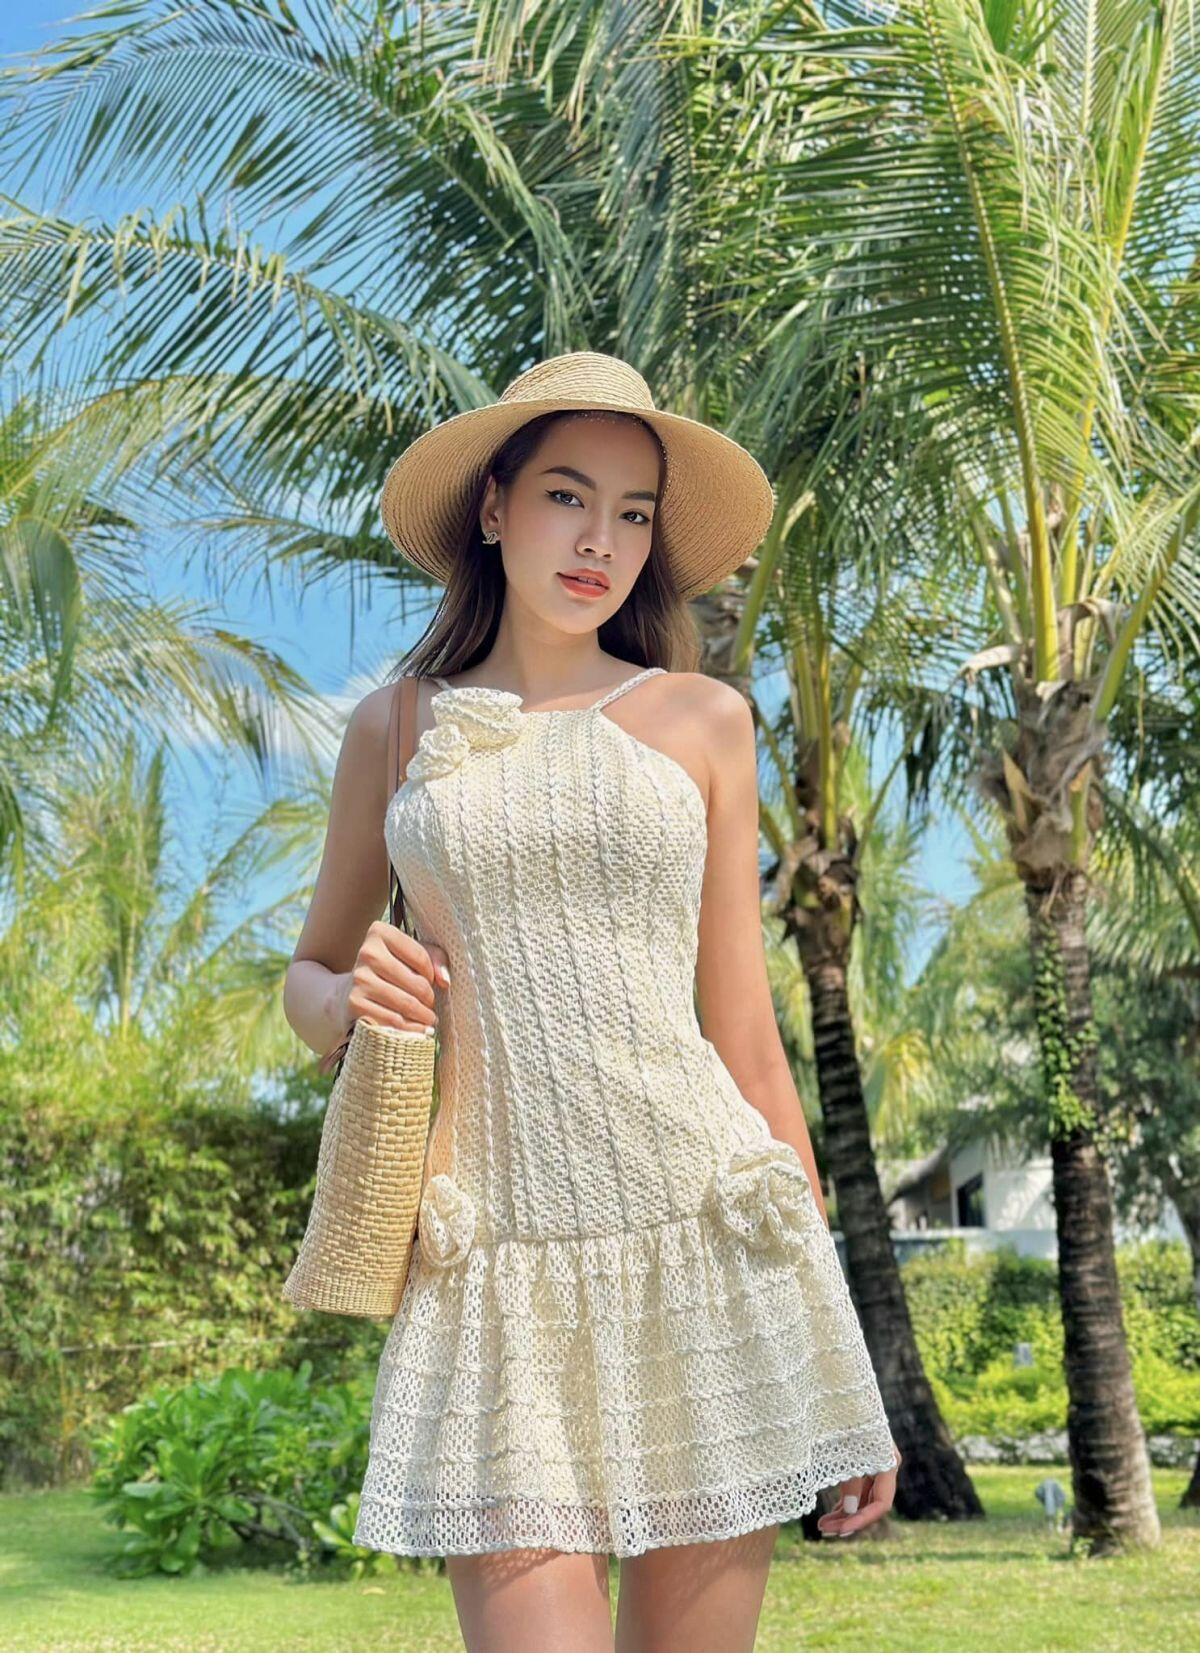 Nhan sắc đời thường của nữ kiến trúc sư 28 tuổi đăng quang Hoa hậu Hòa bình Việt Nam 2023